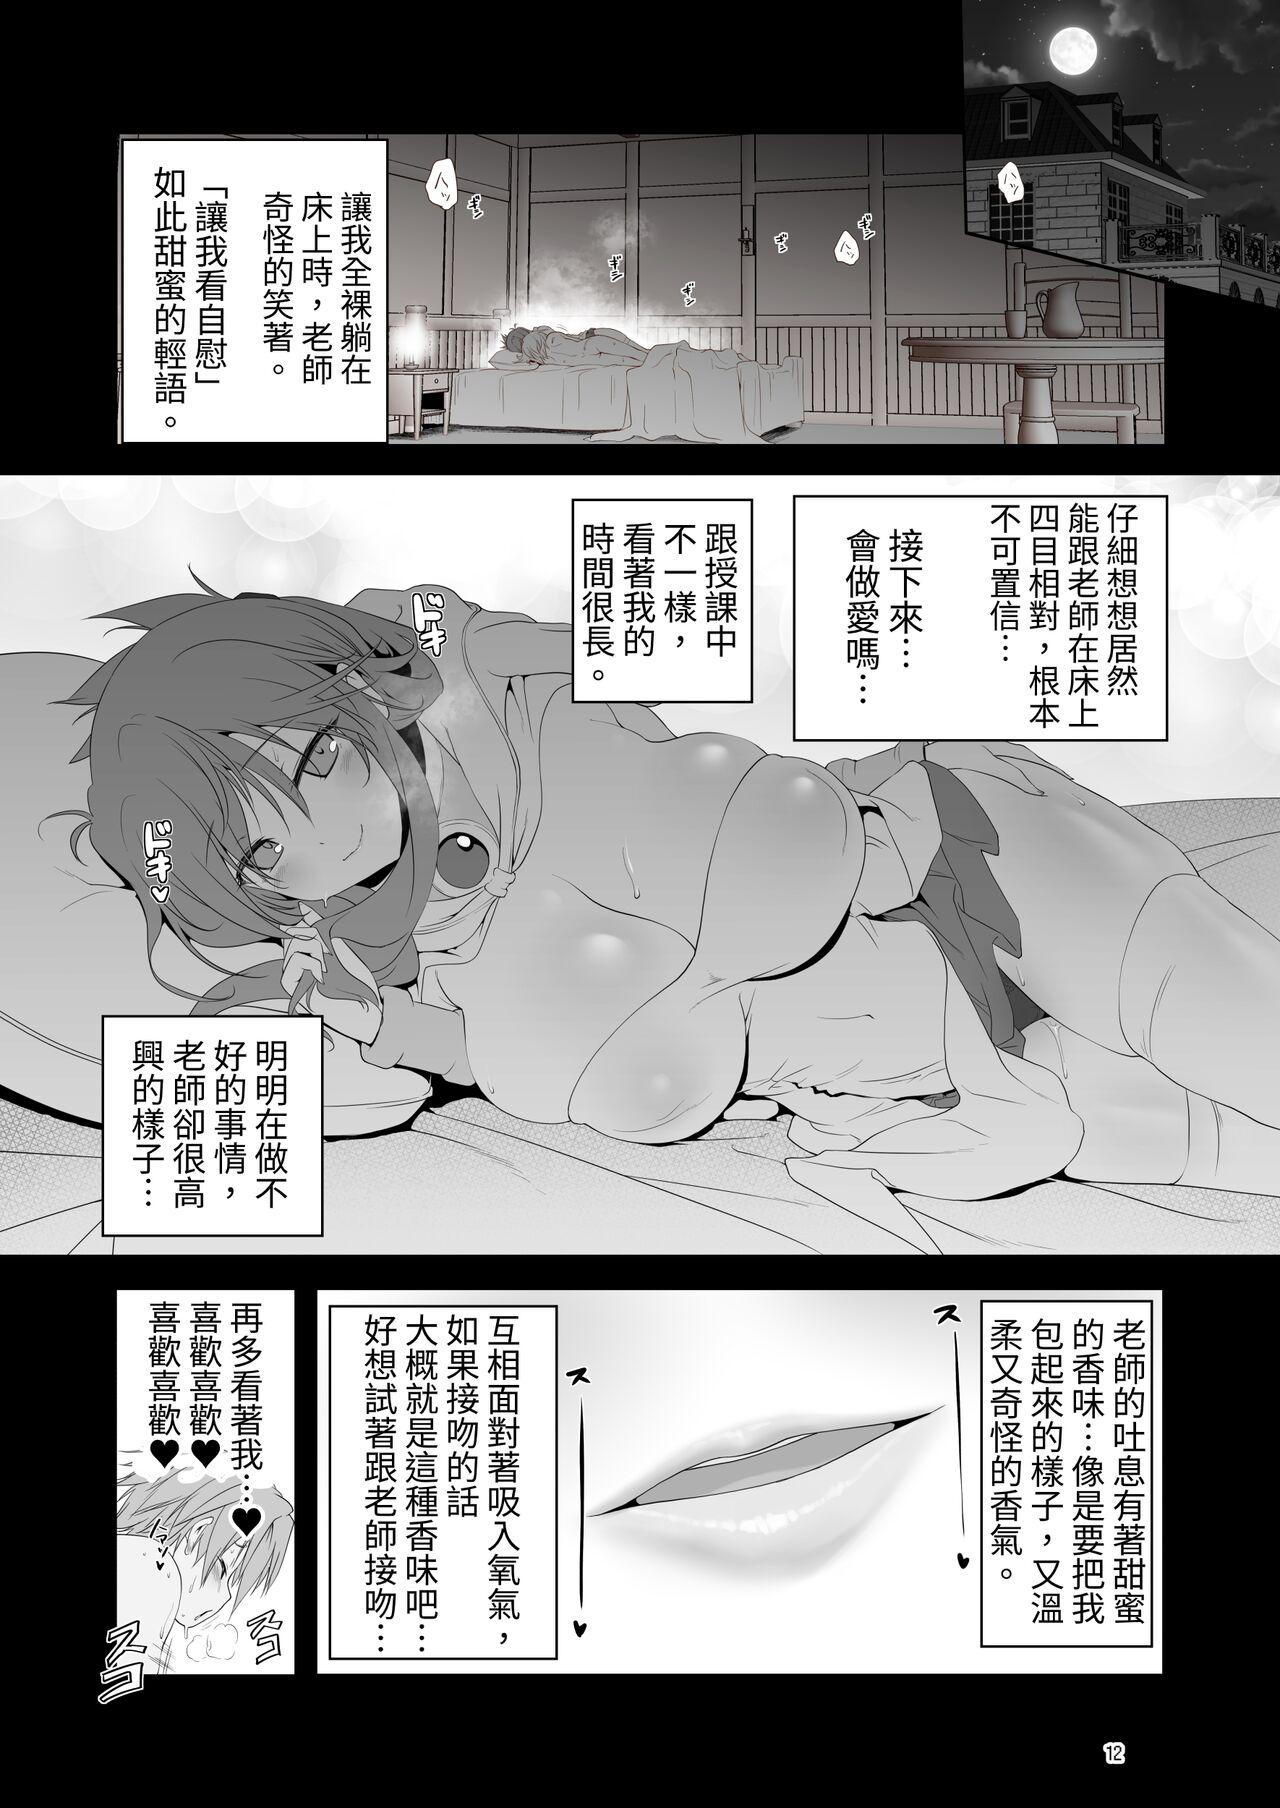 Gangbang Makotoni Zannen desu ga Bouken no Sho 9 wa Kiete Shimaimashita. - Original Sfm - Page 12